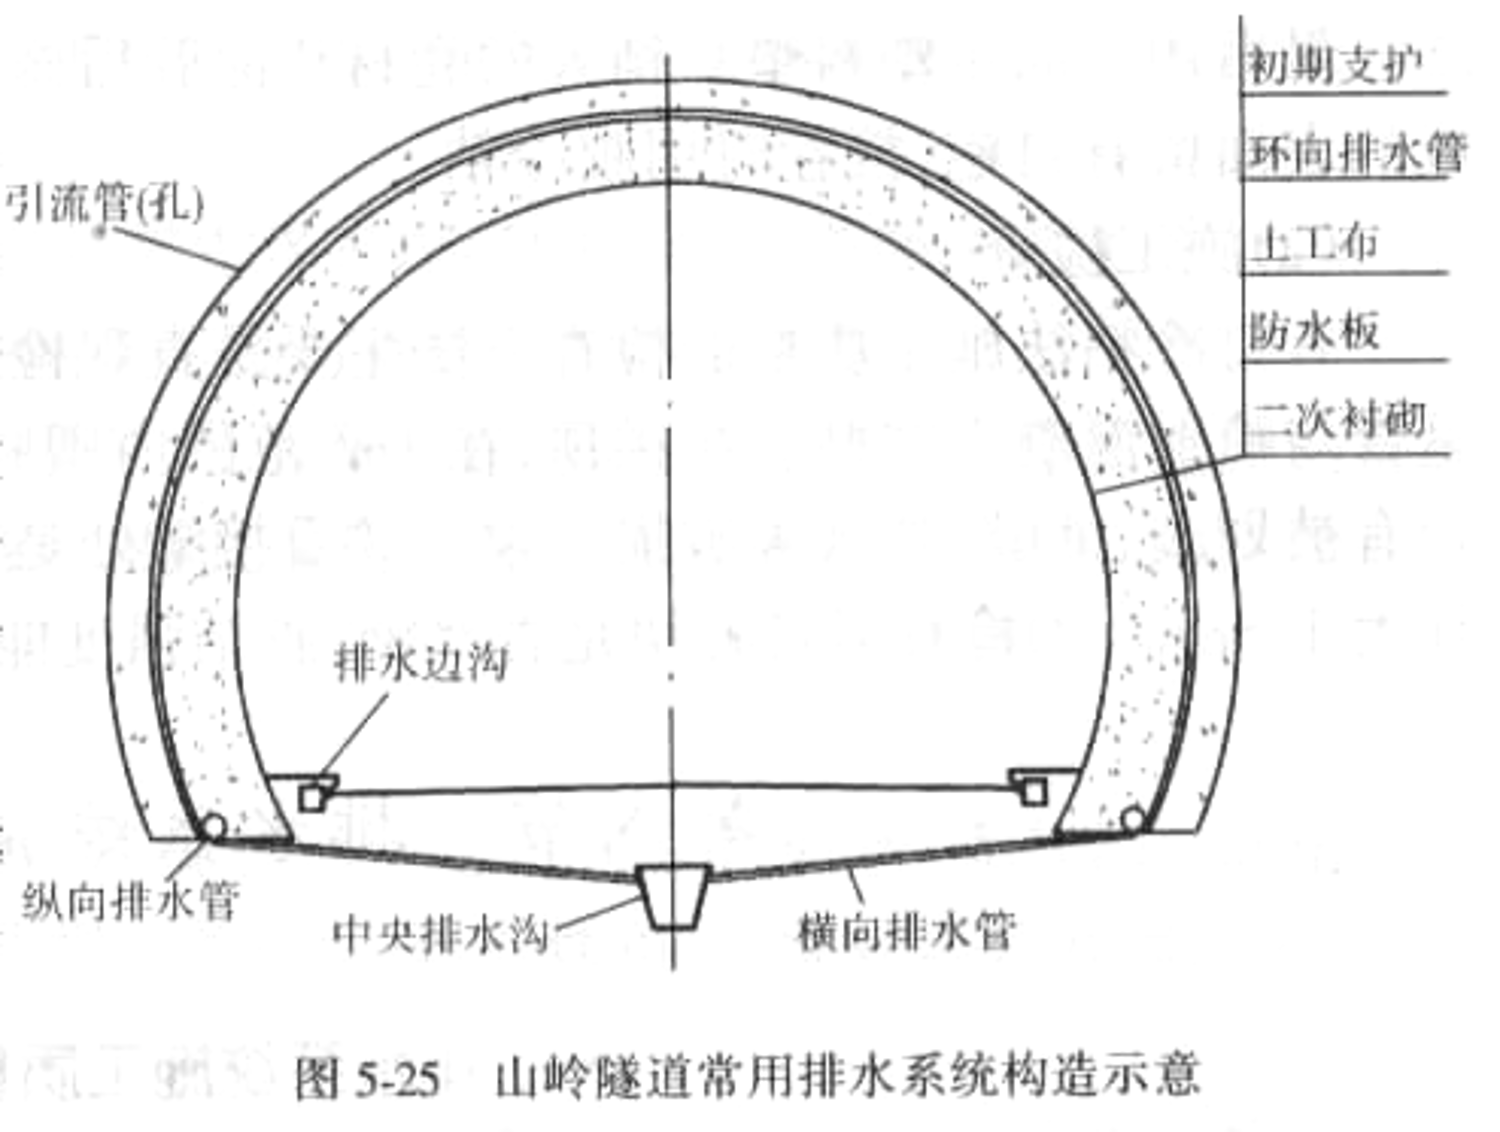 隧道工程质量检测技术及质量评价（74页）_1